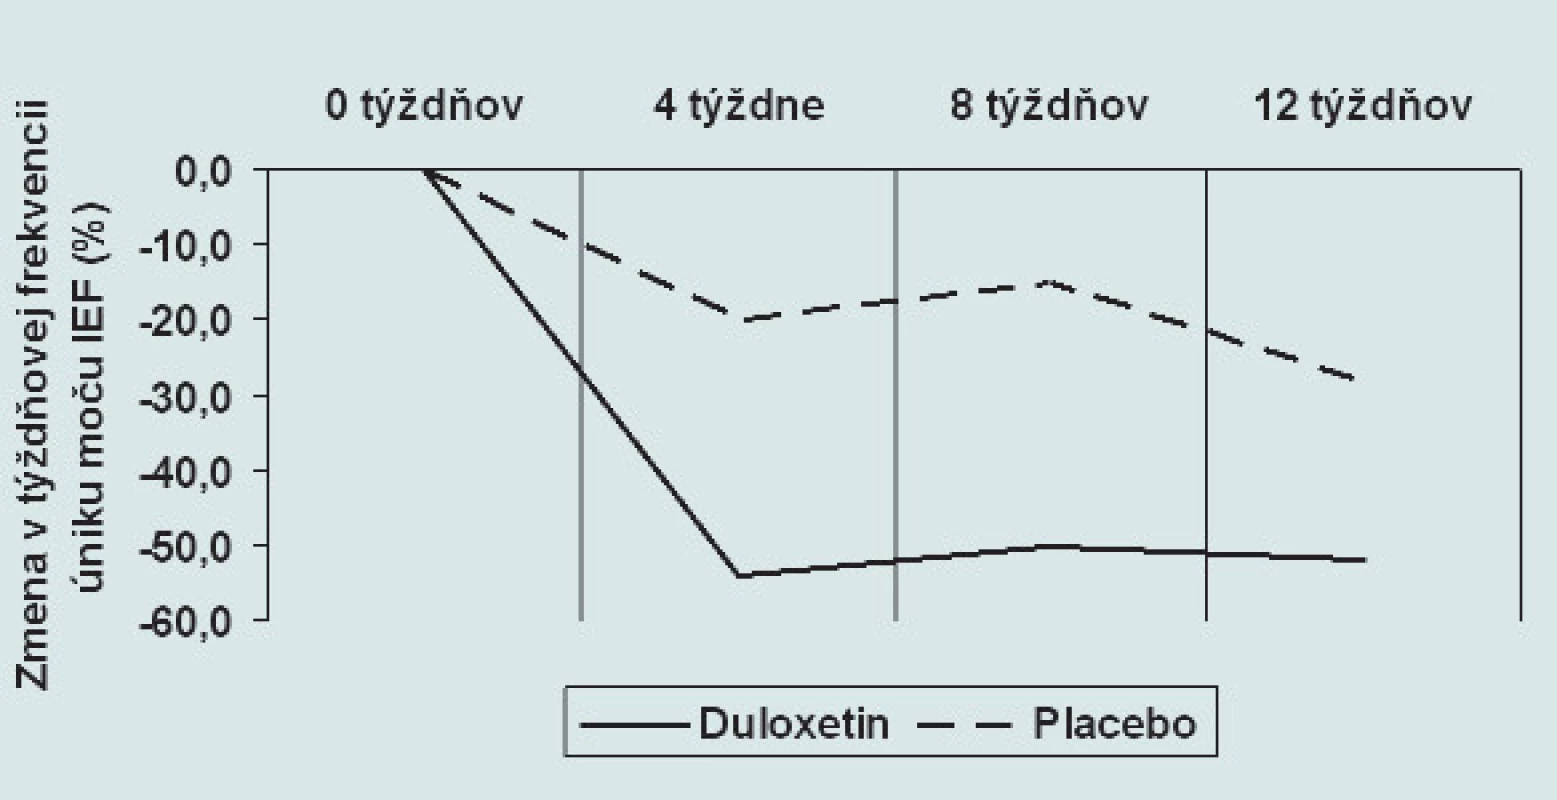 Zmena v týždňovej frekvencii úniku moču IEF pri medikamentóznej liečbe duloxetinom (p &lt; 0,05) a placebom (nesignifikantne) v tretej fáze klinického skúšania.